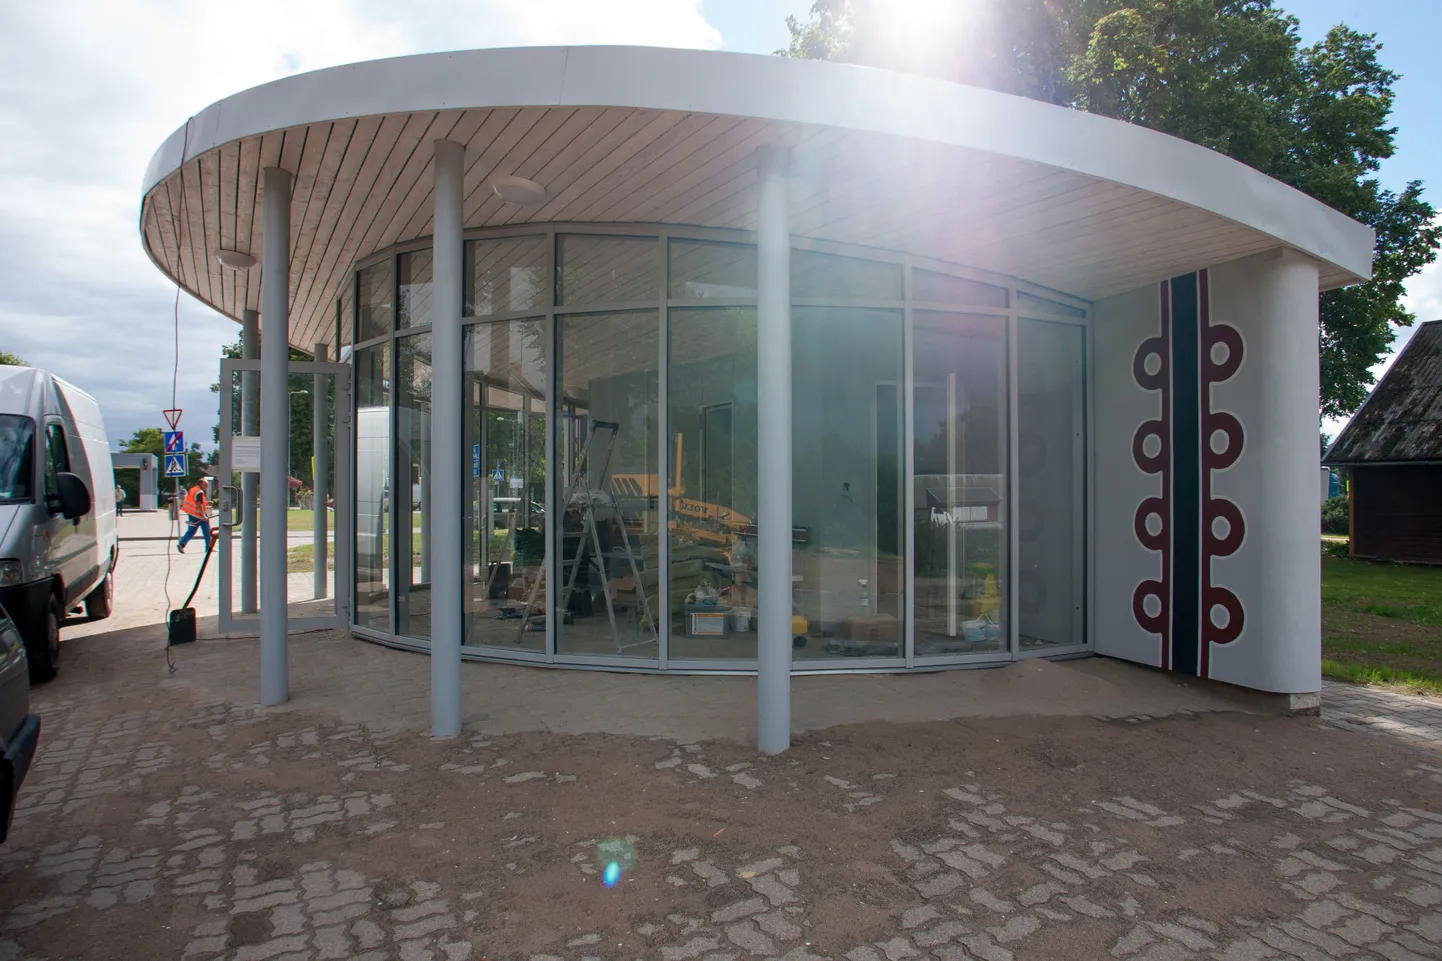 Karksi-Nuia bussijaamast saab augustist alates otseliiniga Võrru ja Värskasse sõita.